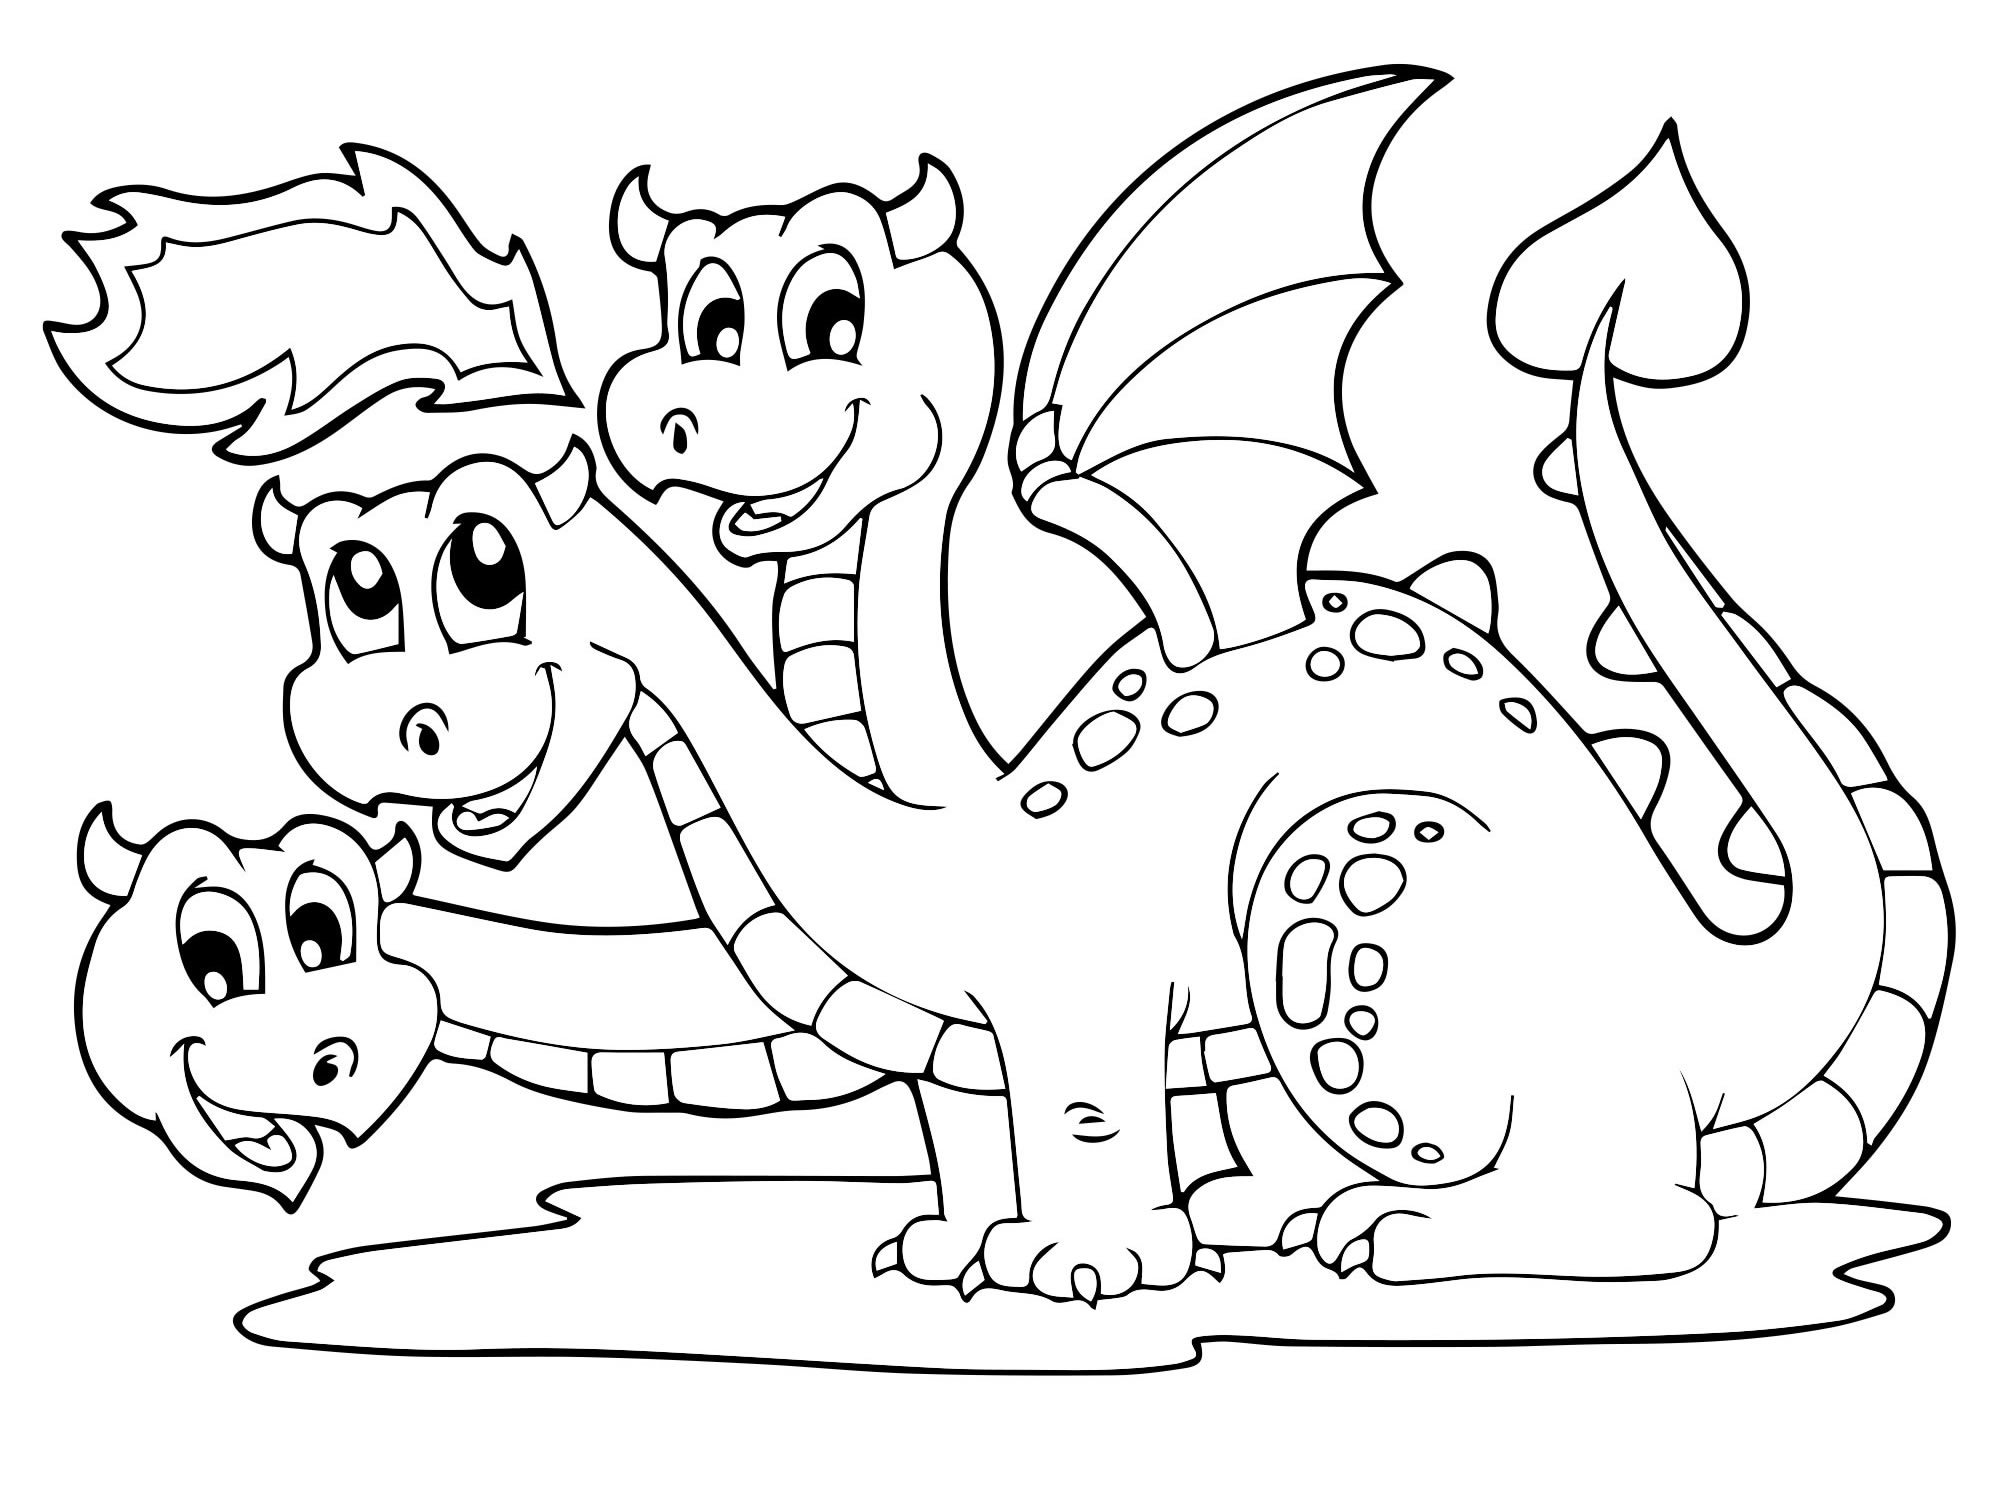 Маленький трехглавый дракон раскраска для детей